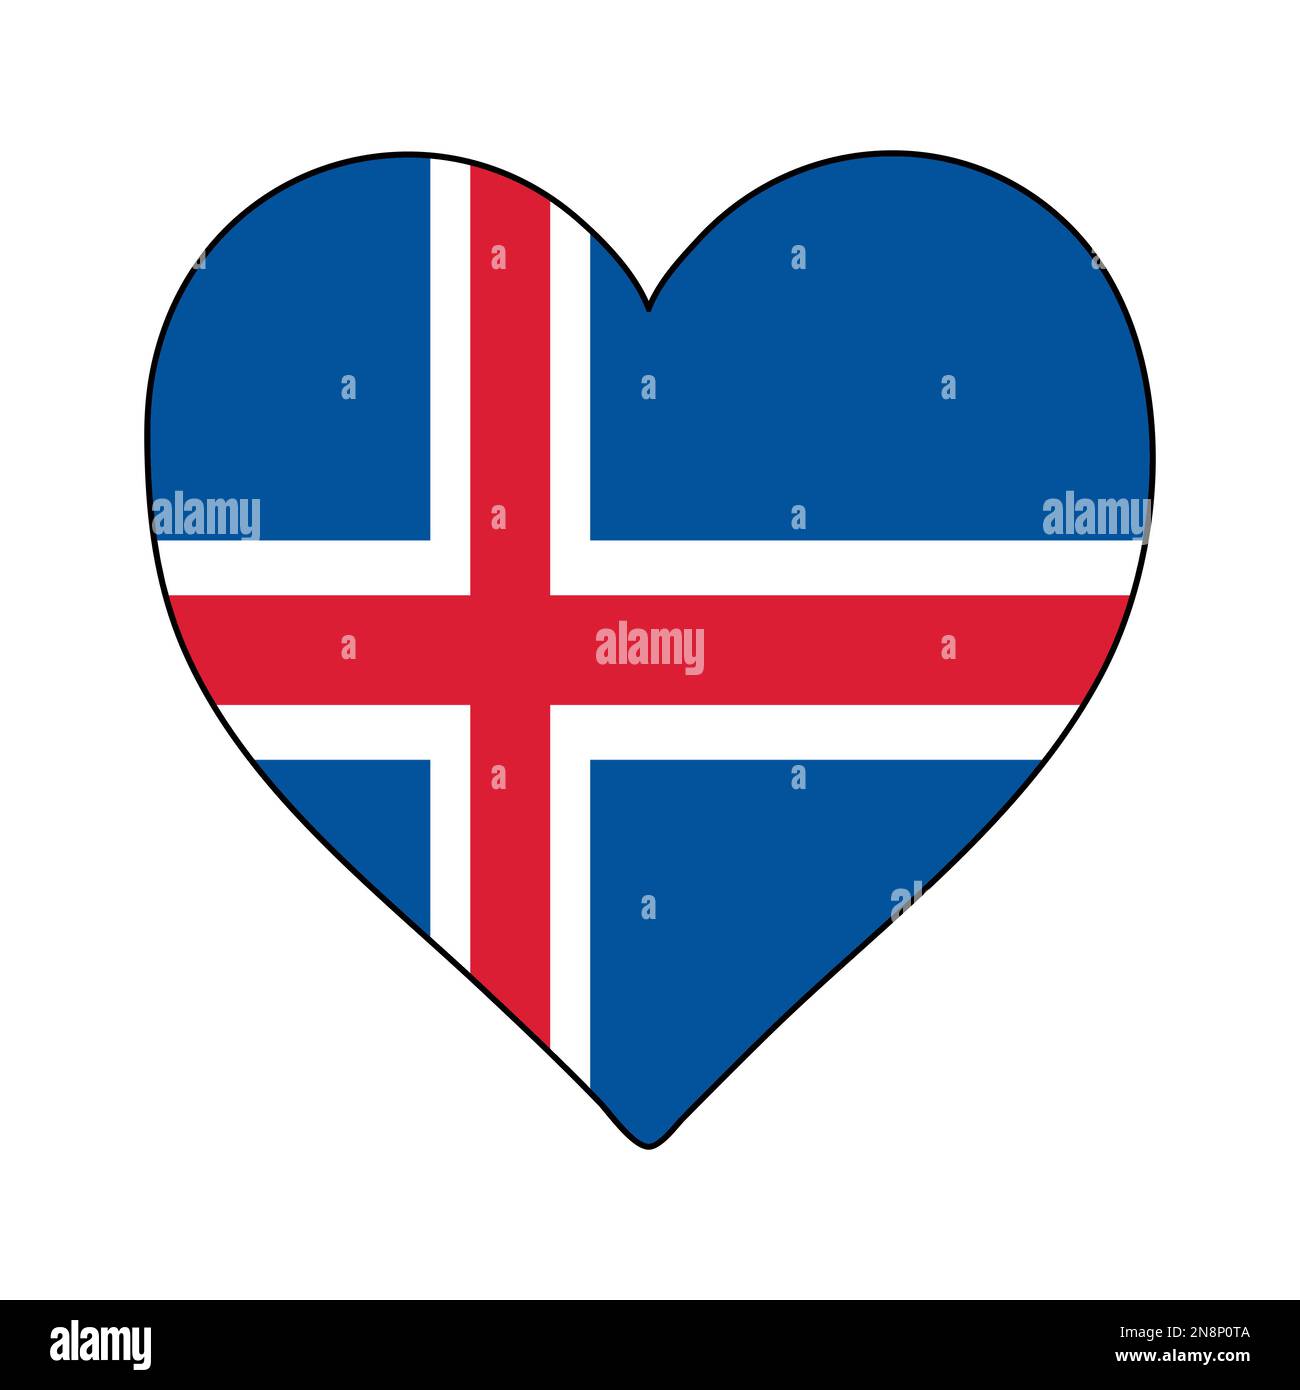 Islanda Heart Shape Flag. Amate l'Islanda. Visita Islanda. Nord Europa. Europa. Unione europea. Disegno grafico dell'illustrazione vettoriale. Illustrazione Vettoriale